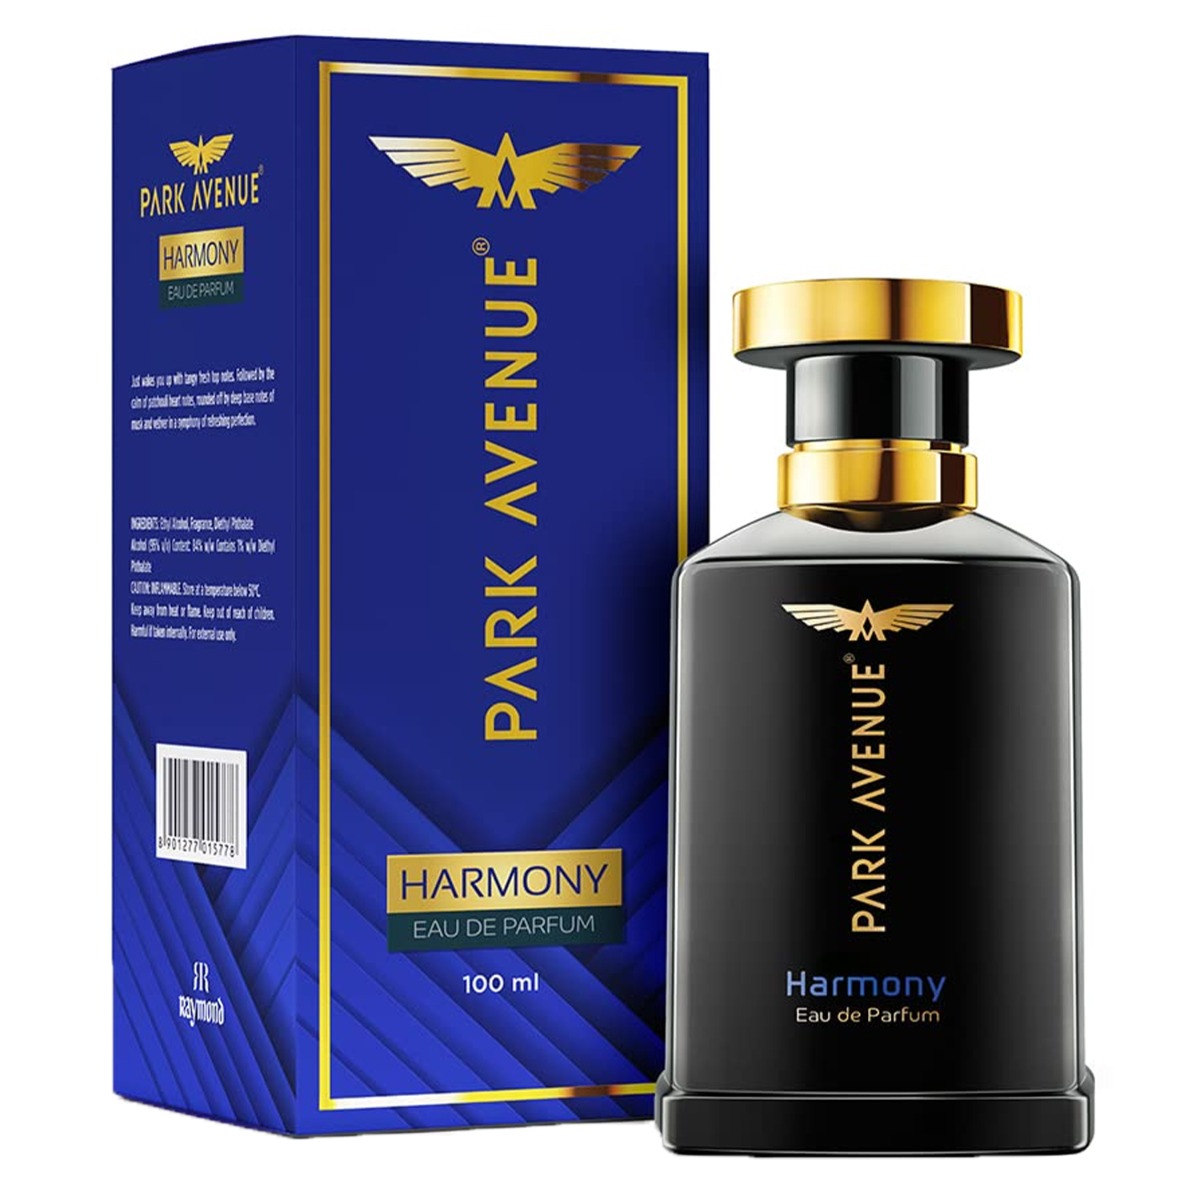 Park Avenue Harmony Collection Eau De Parfum, 100ml